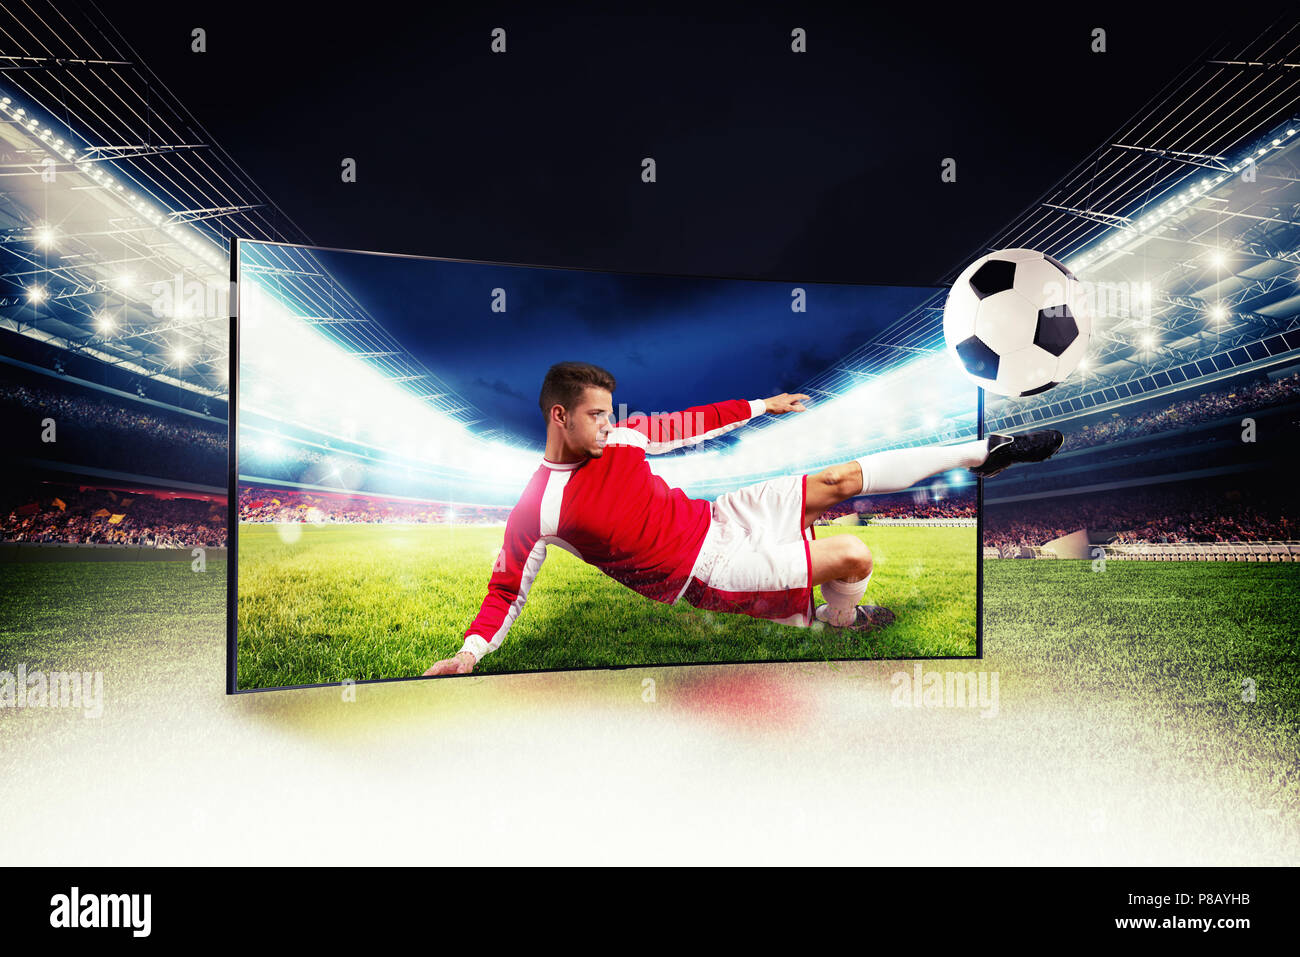 Réalisme des images sportives diffusées sur la télévision haute définition Banque D'Images